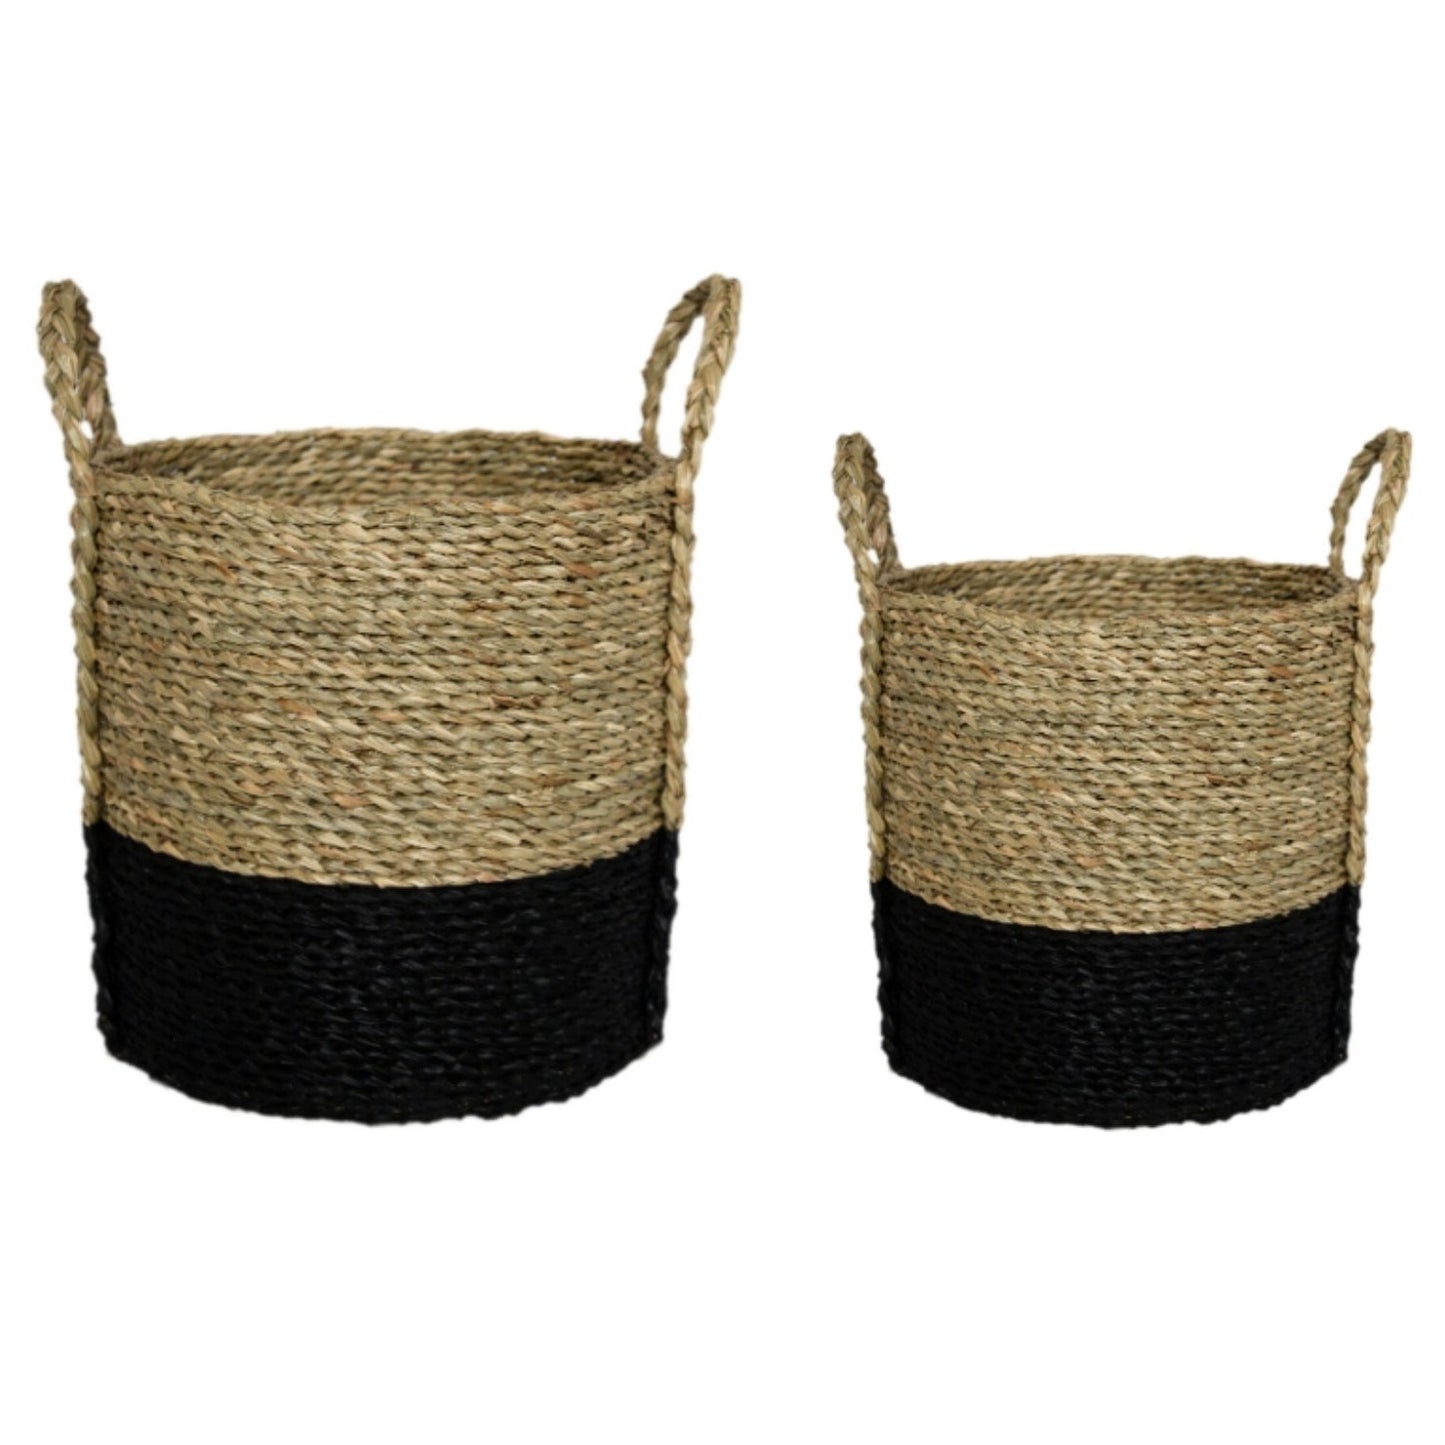 Seagrass Log & Kindling Black Basket Set by Ivyline